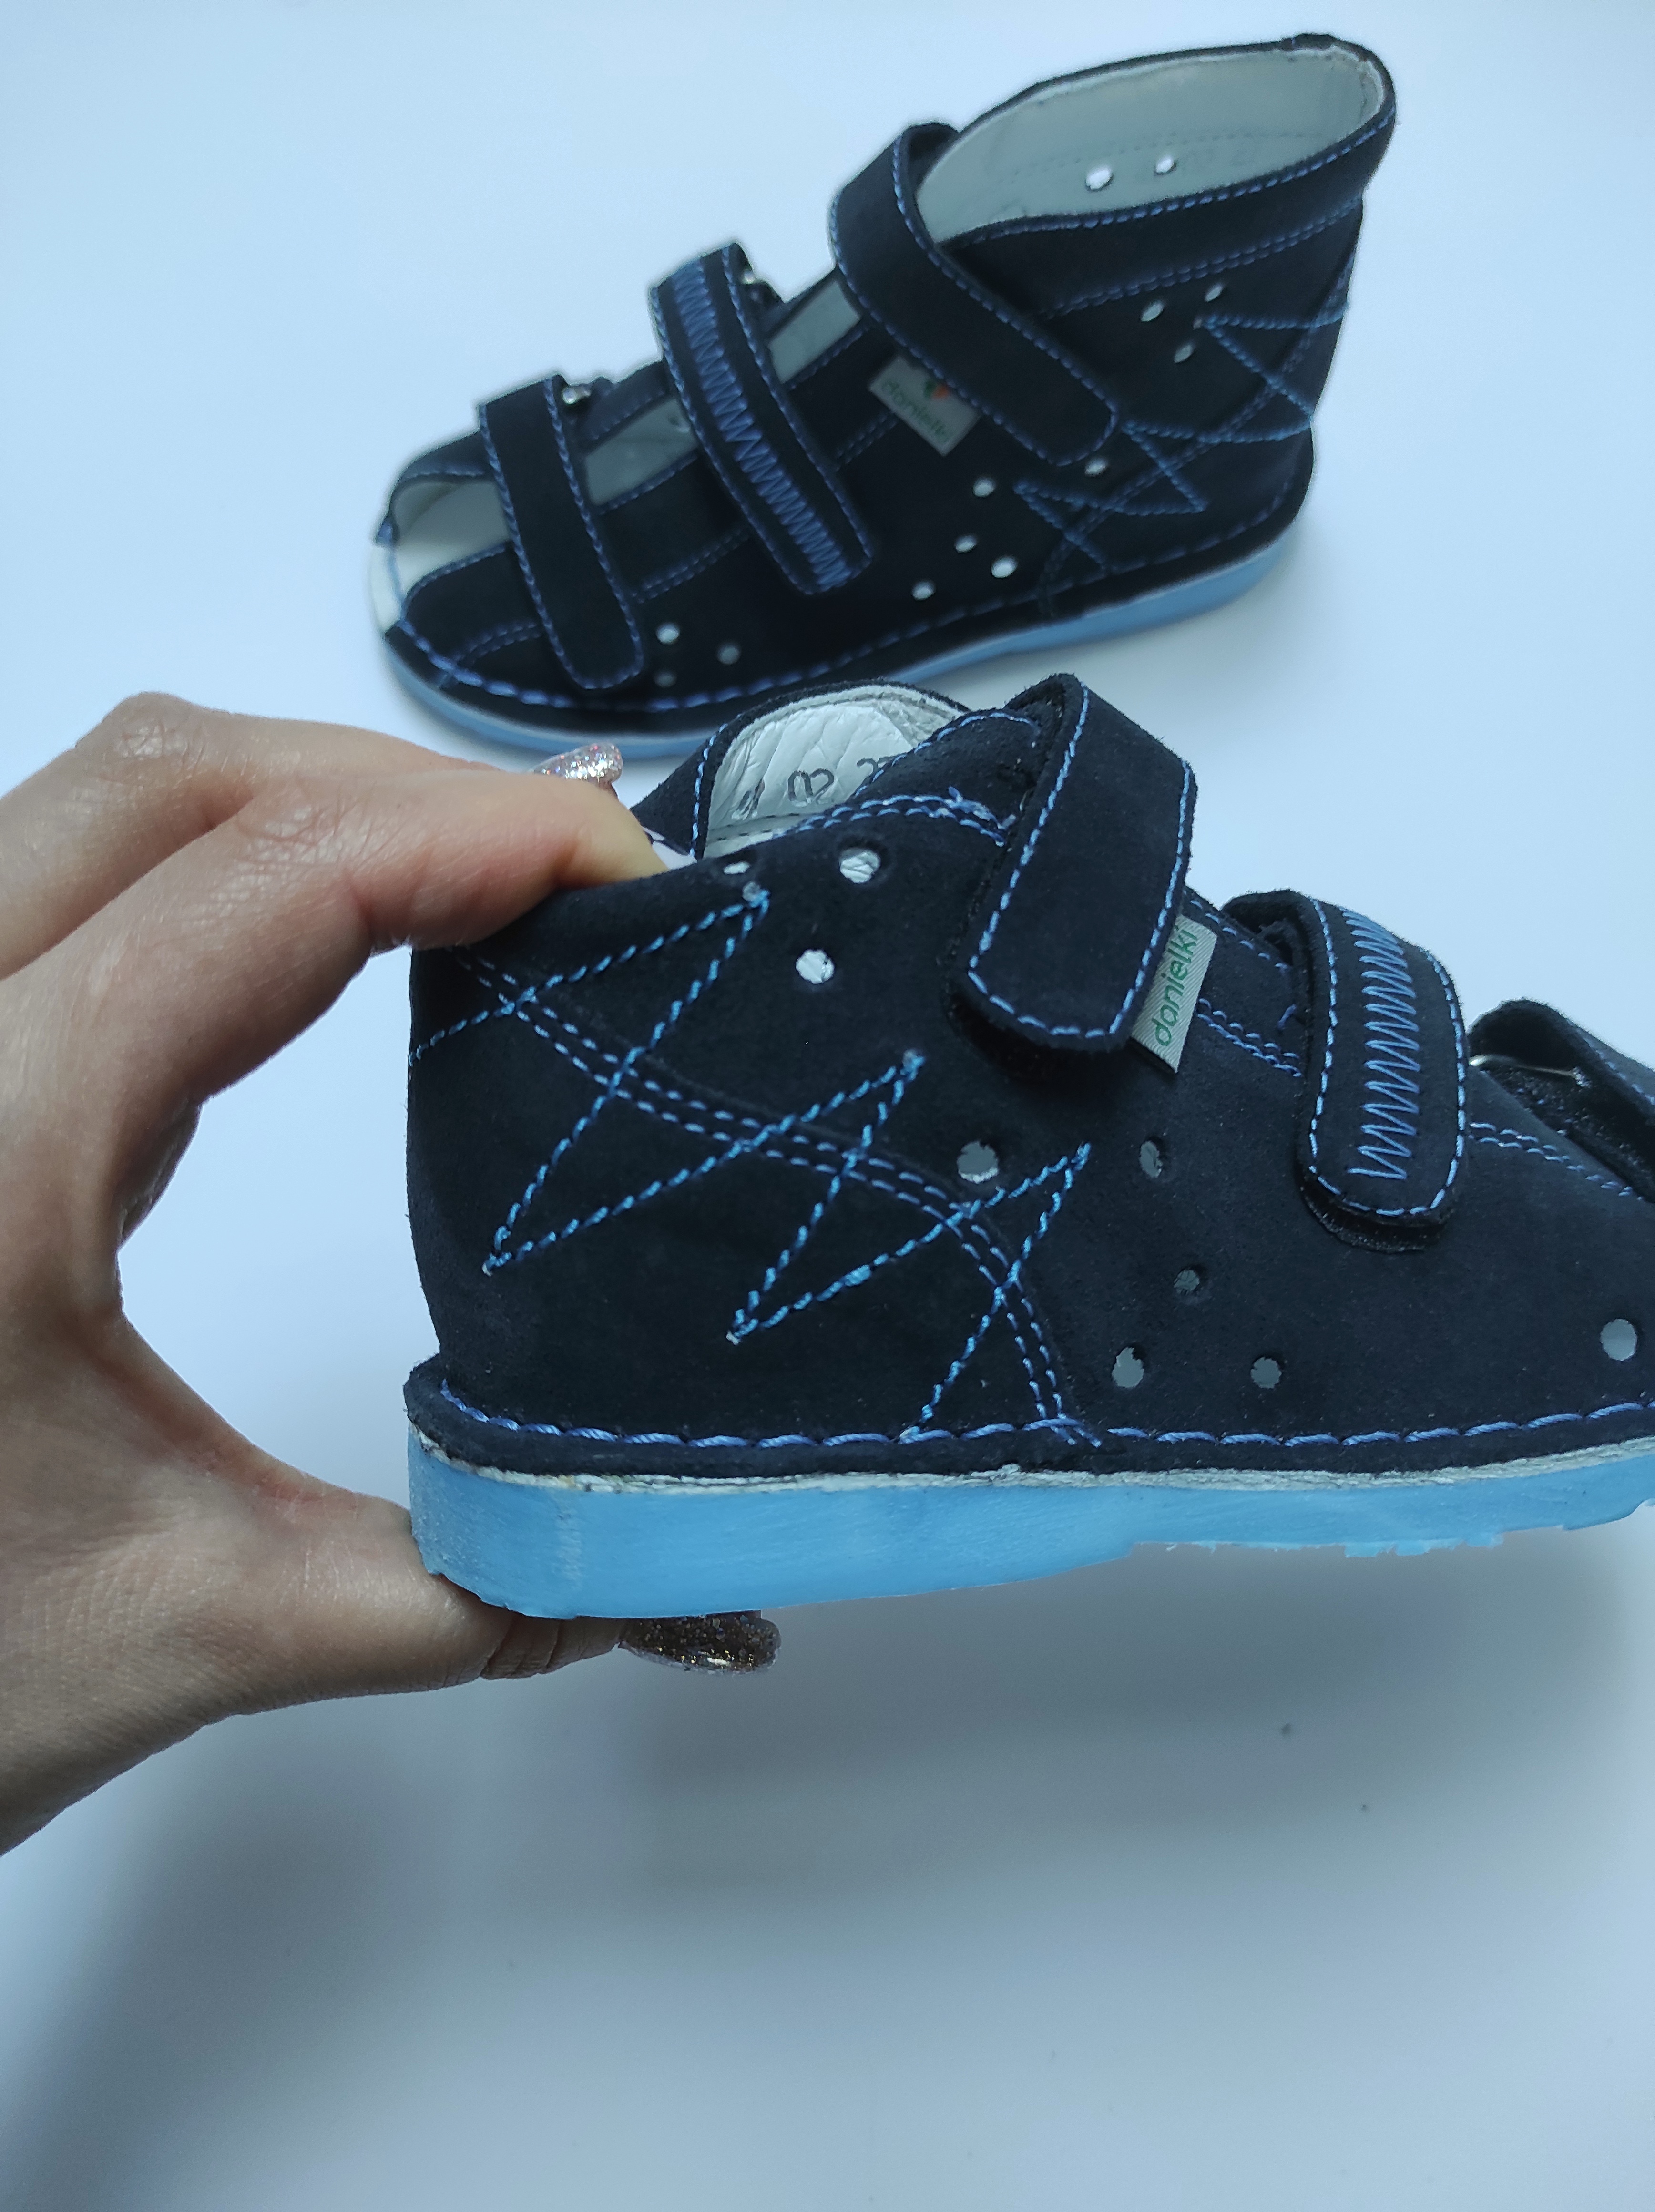 Danielki - rehabilitacyjno - profilaktyczne buty dla dzieci